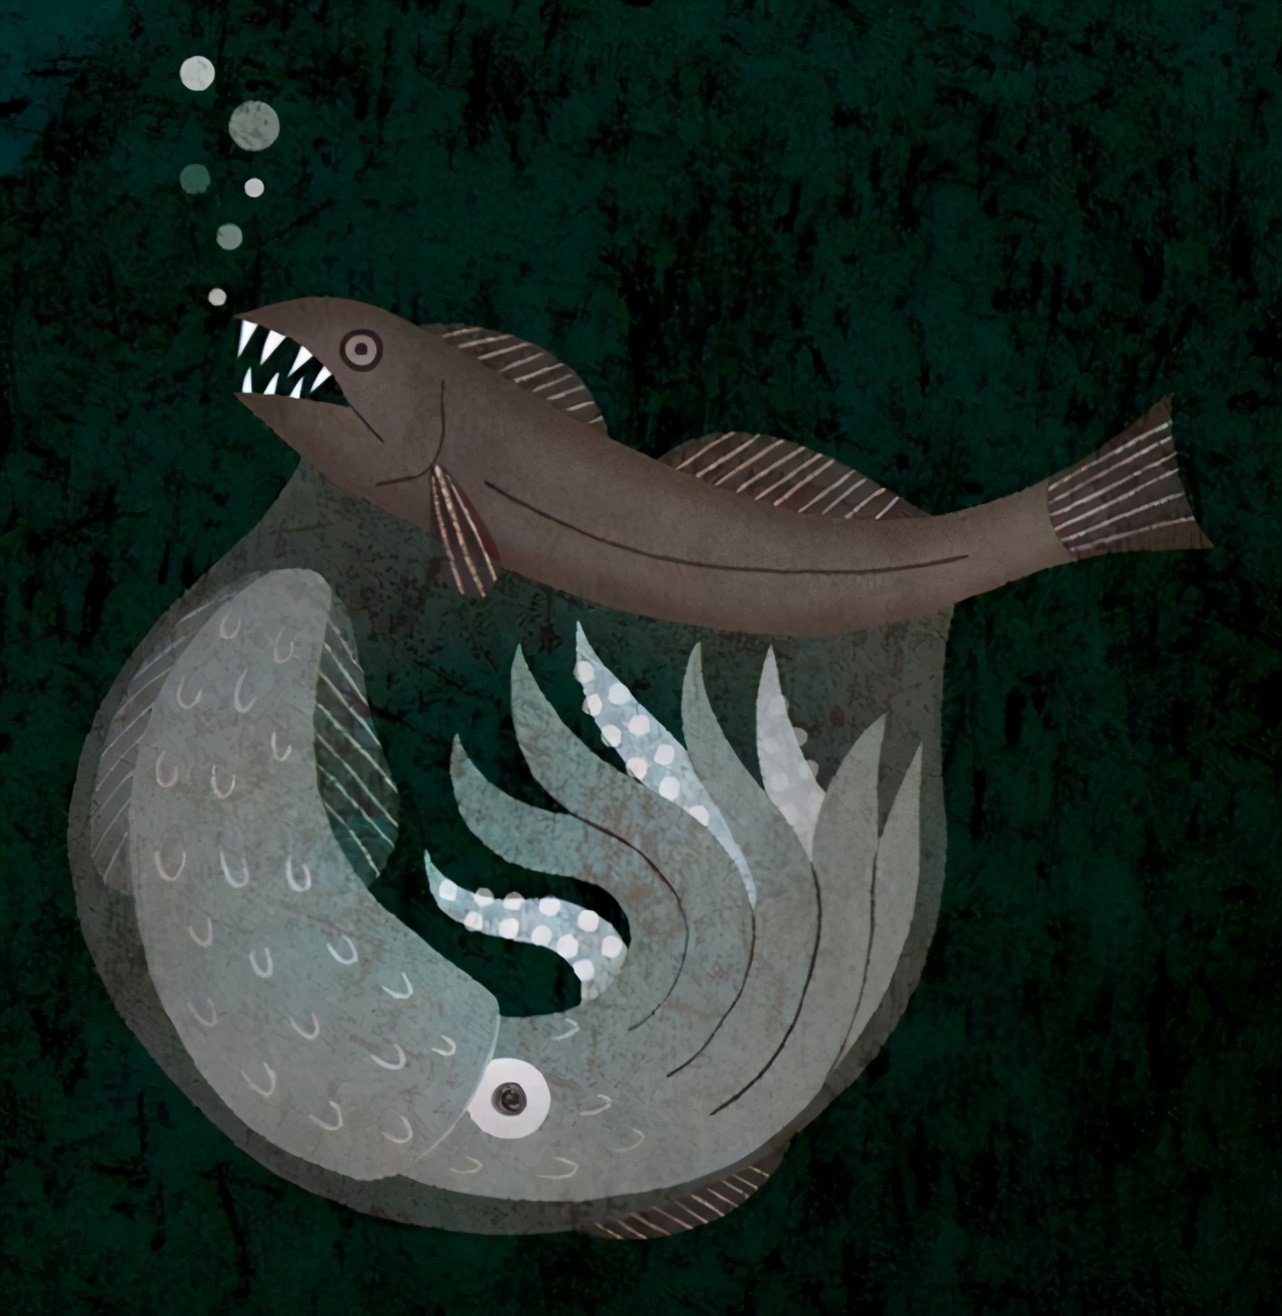 黑叉齿鱼：深海恐怖吃货，能吞下自身10倍体重的猎物，且不被撑死